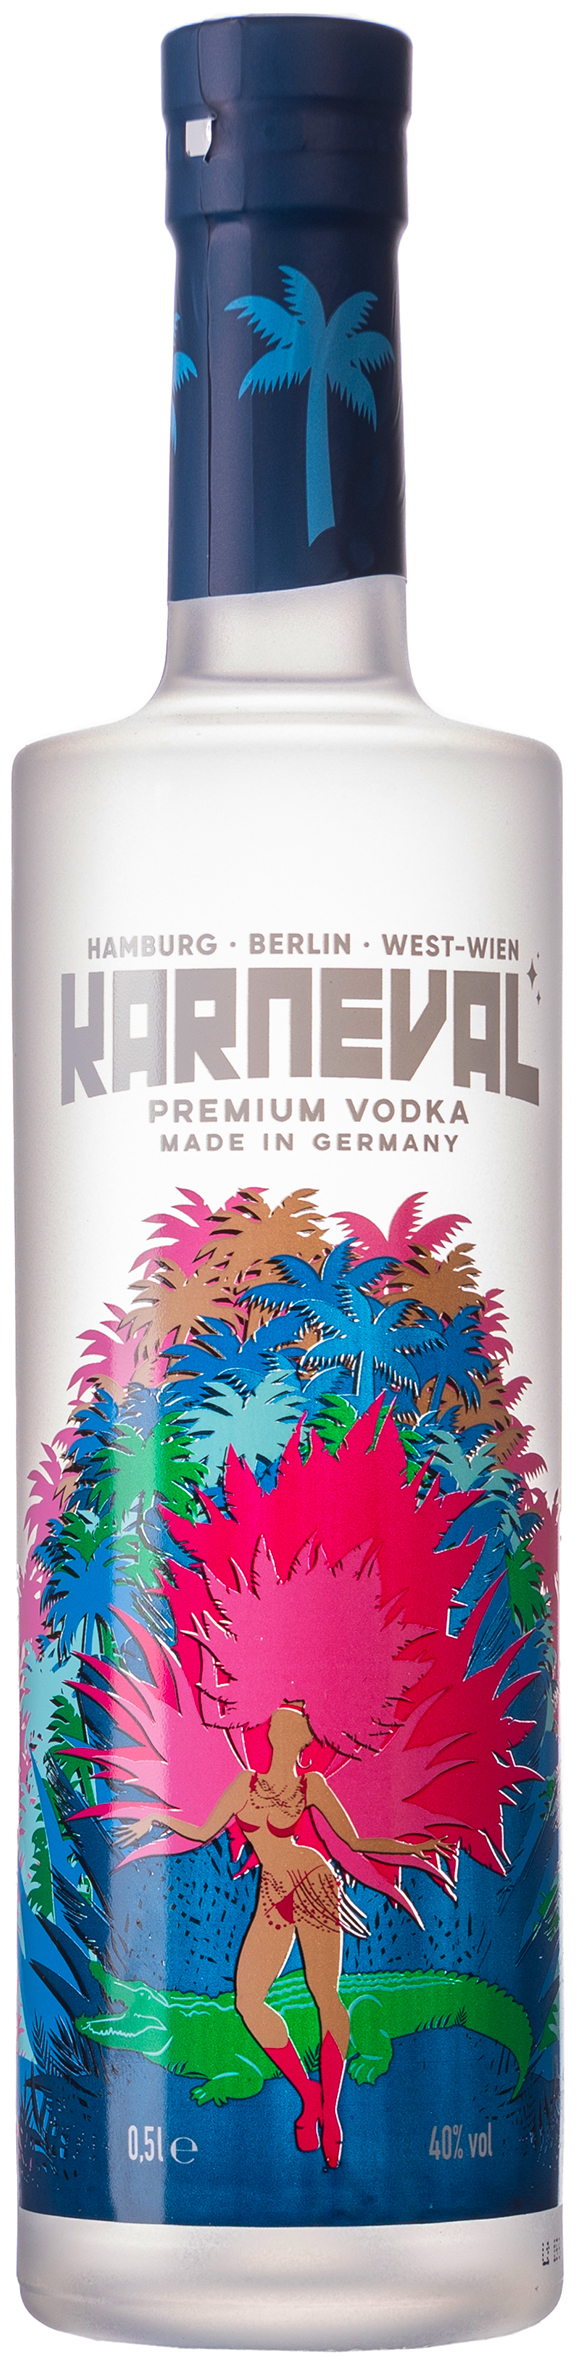 Karneval Premium Vodka 40% vol. 0,5L